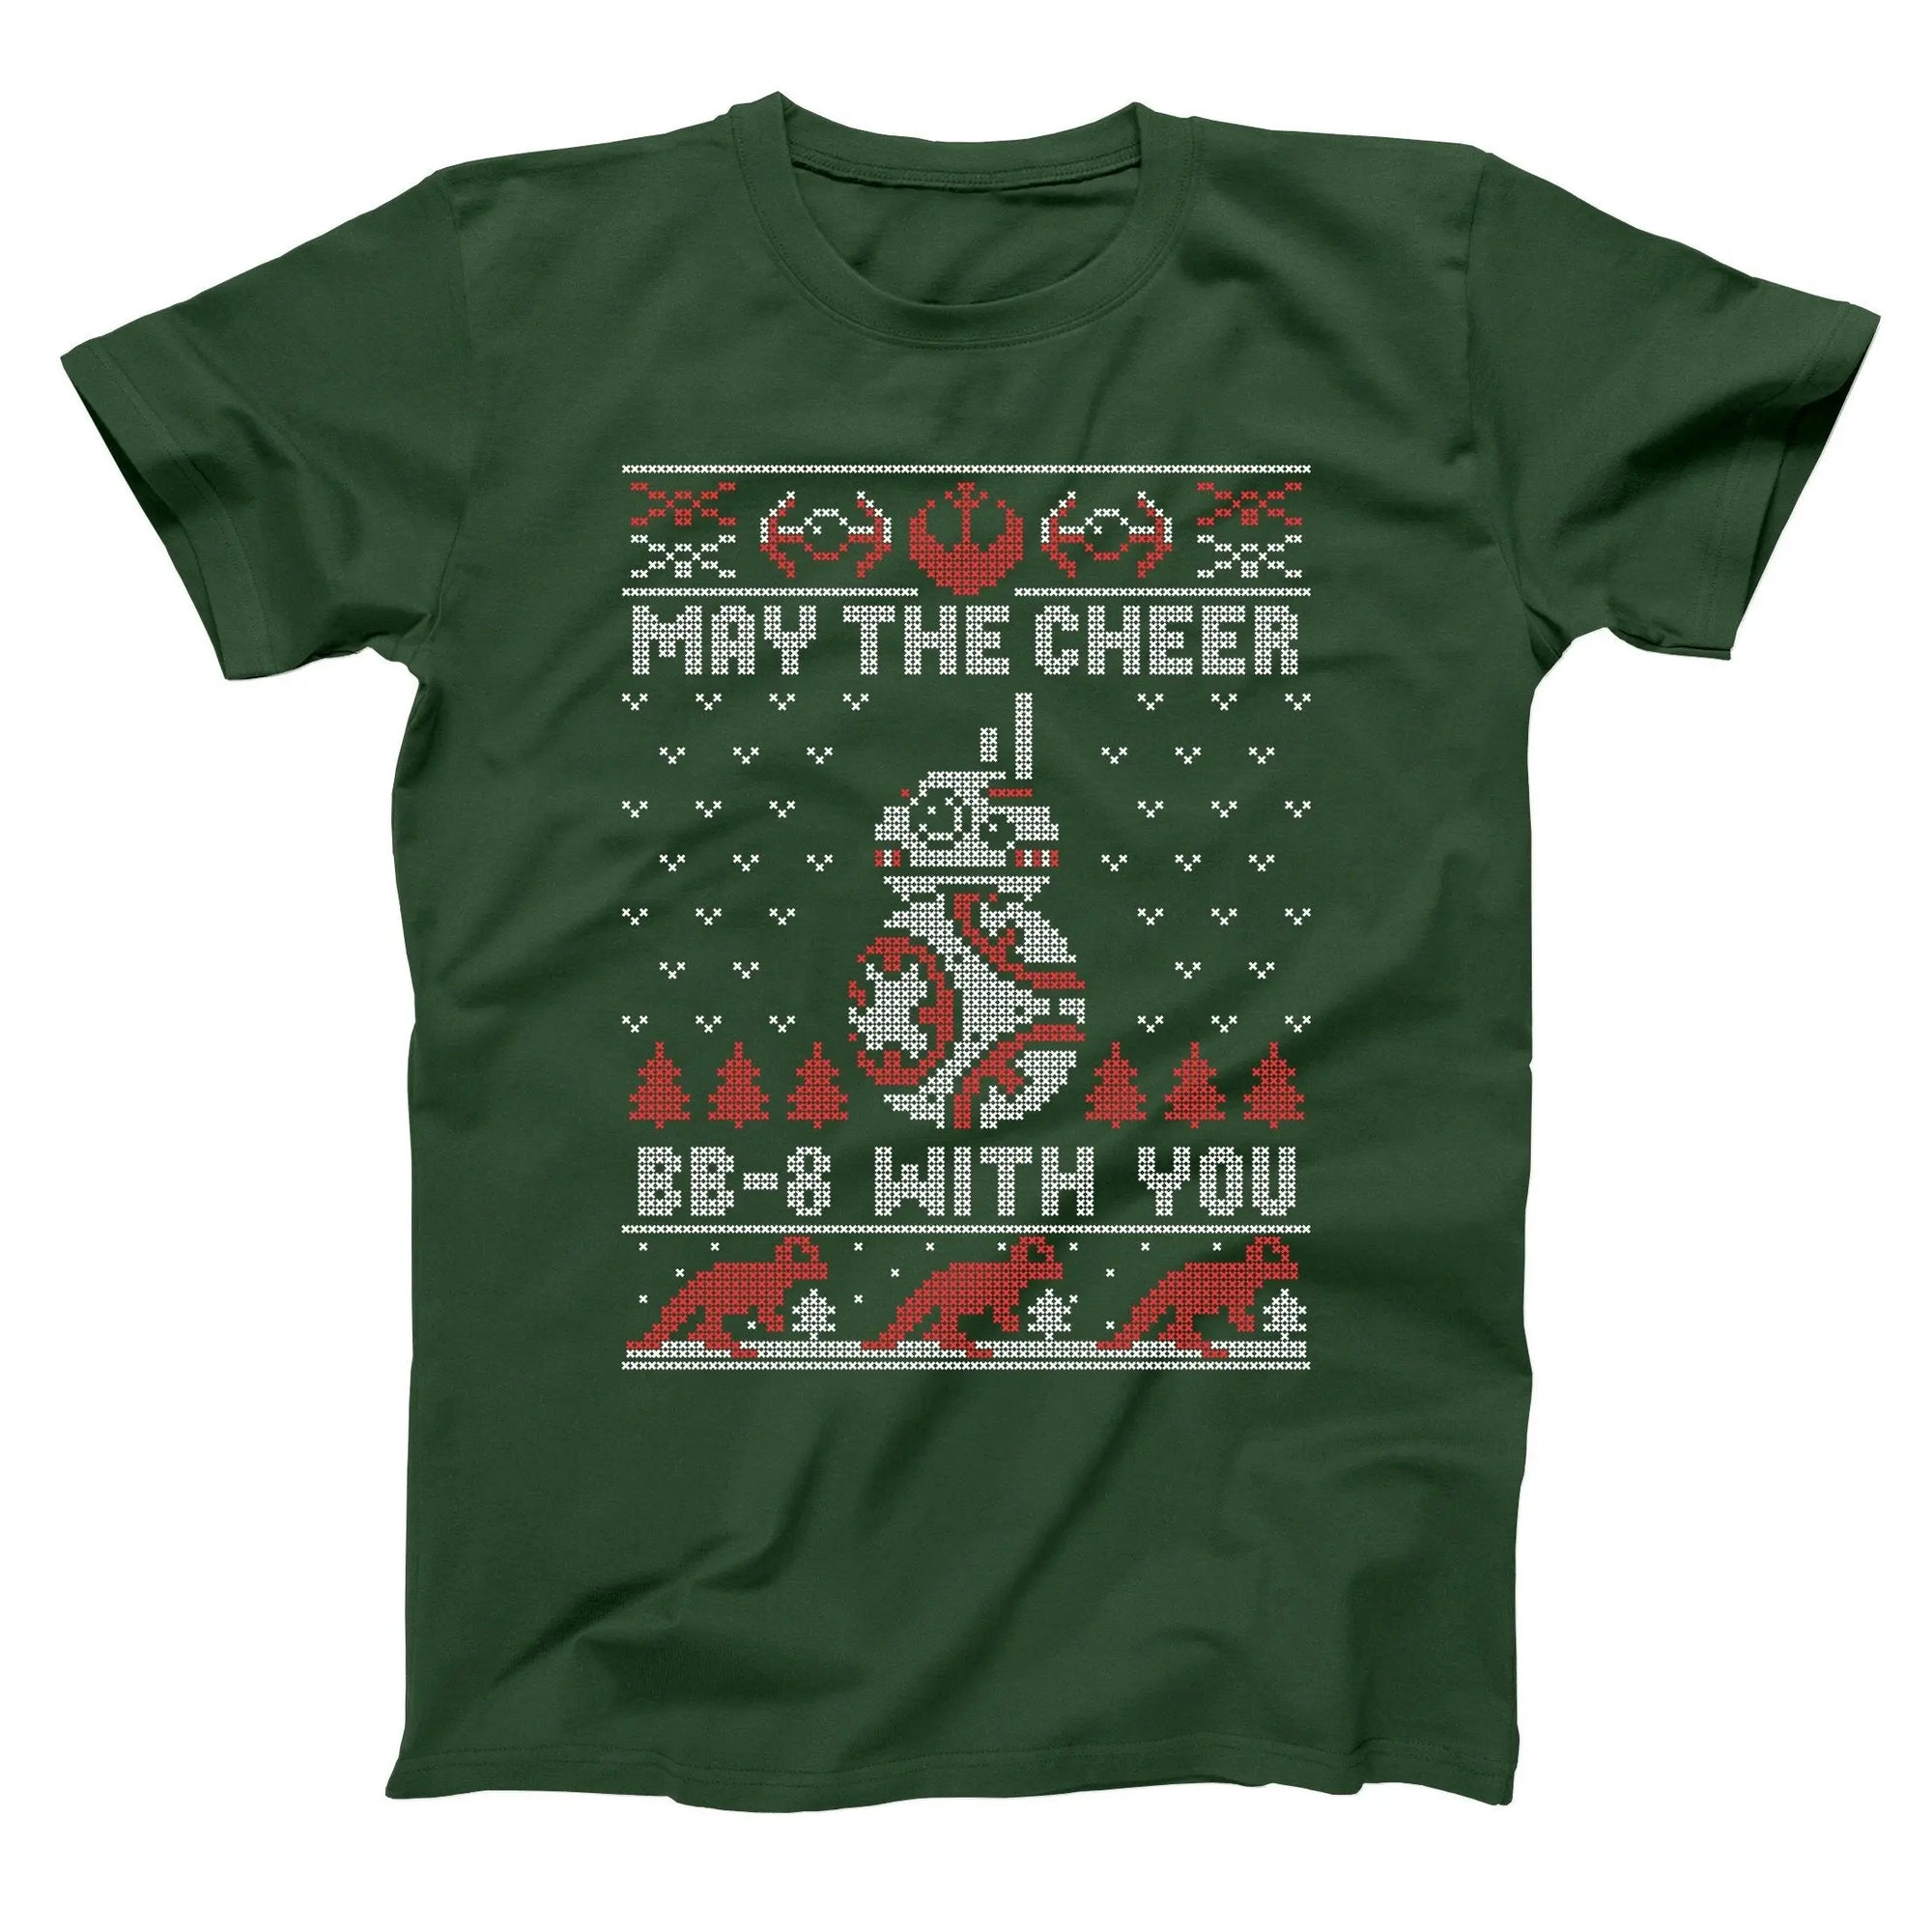 BB-8 Cheer Christmas Tshirt - Donkey Tees